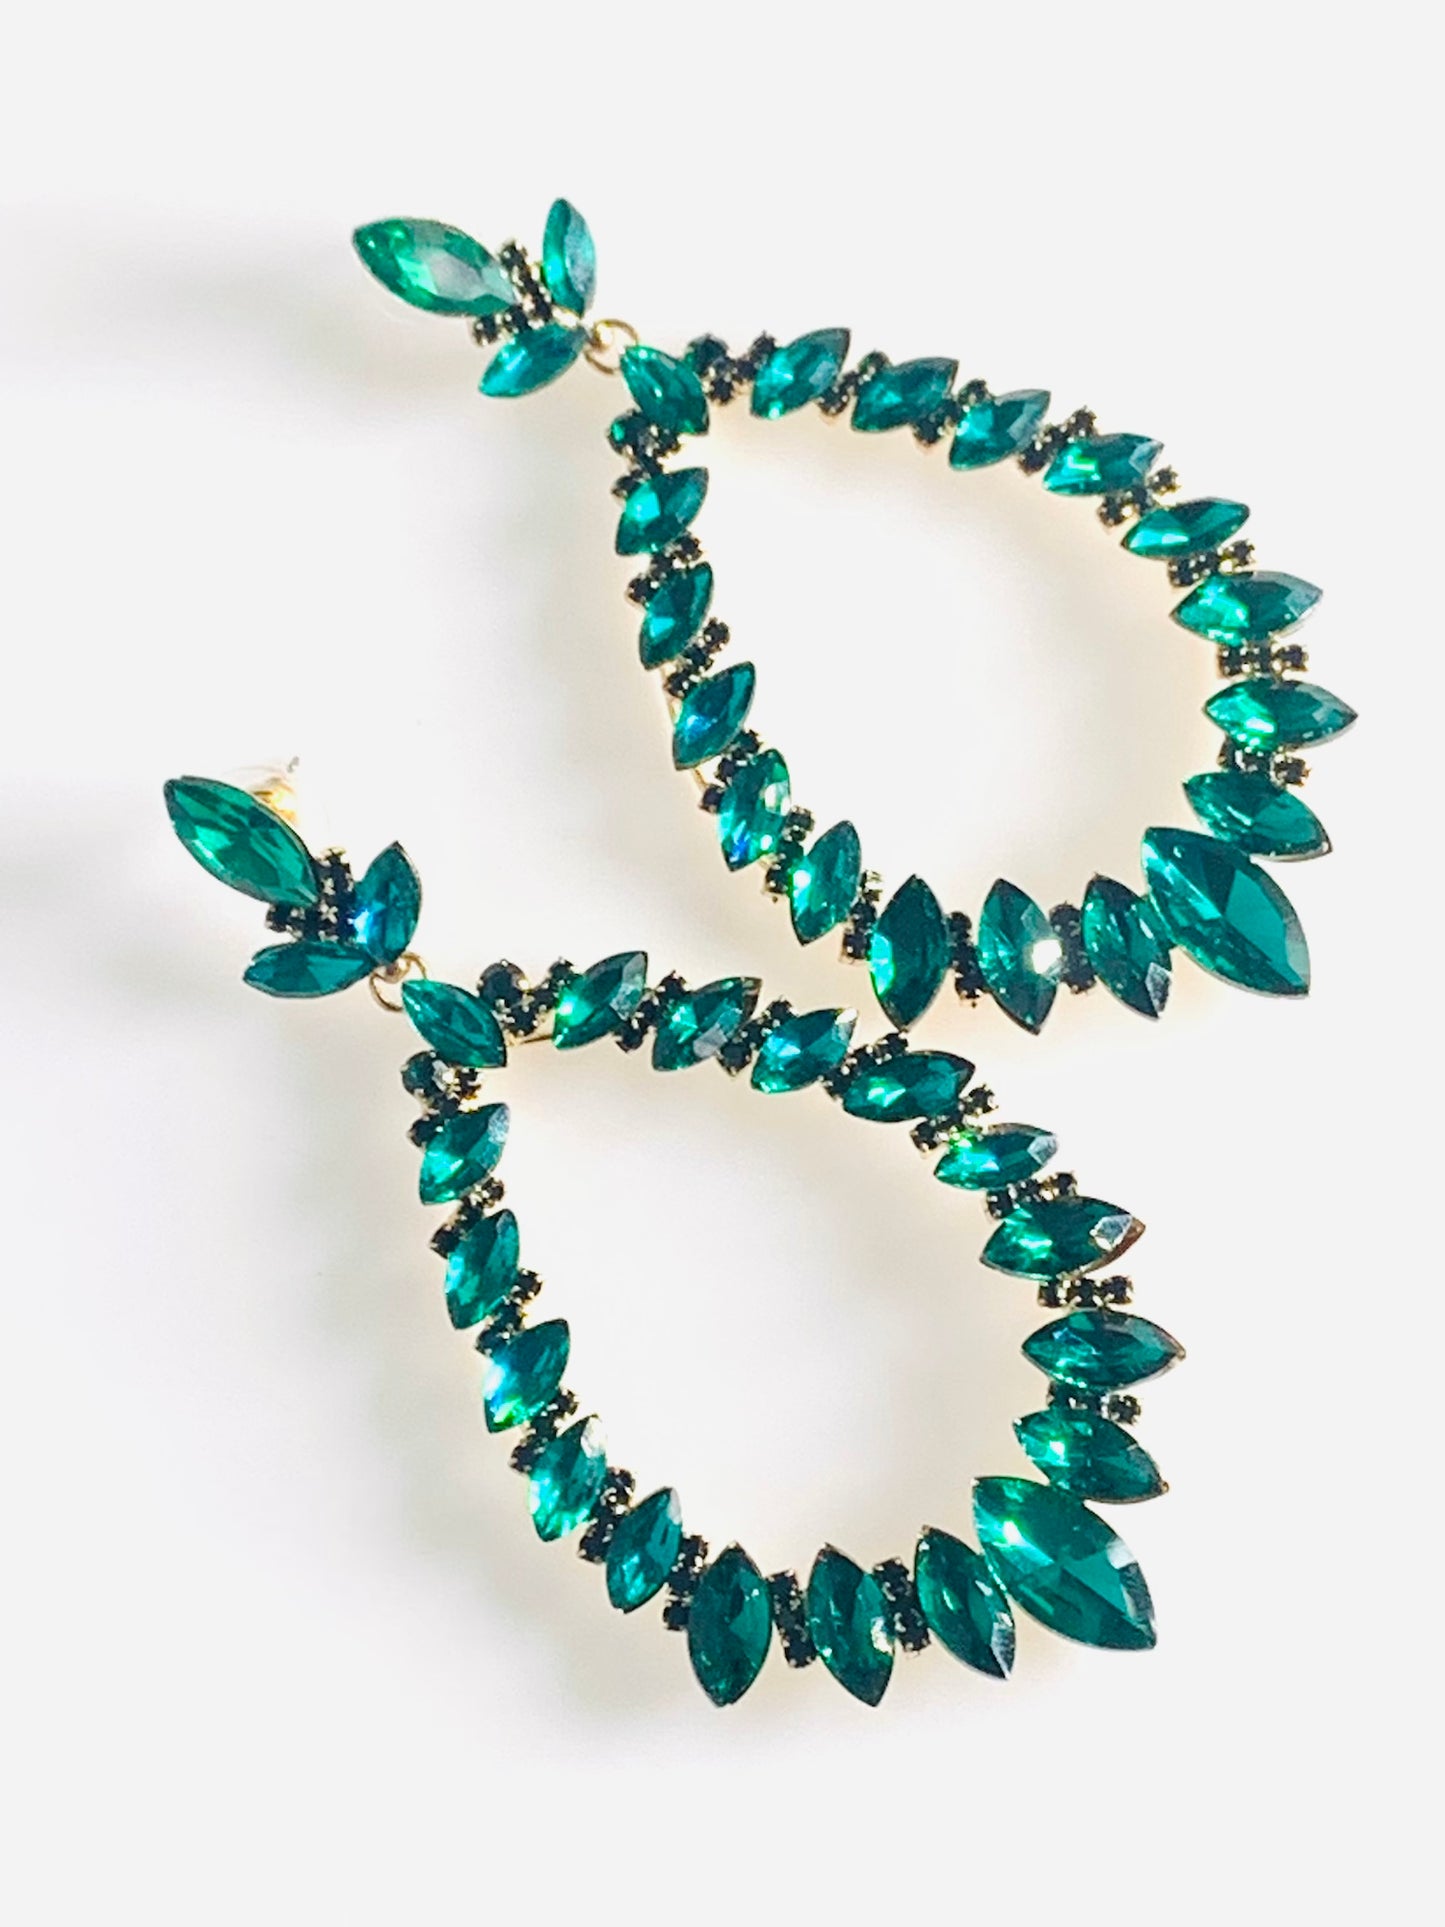 Formal Earrings in Emerald